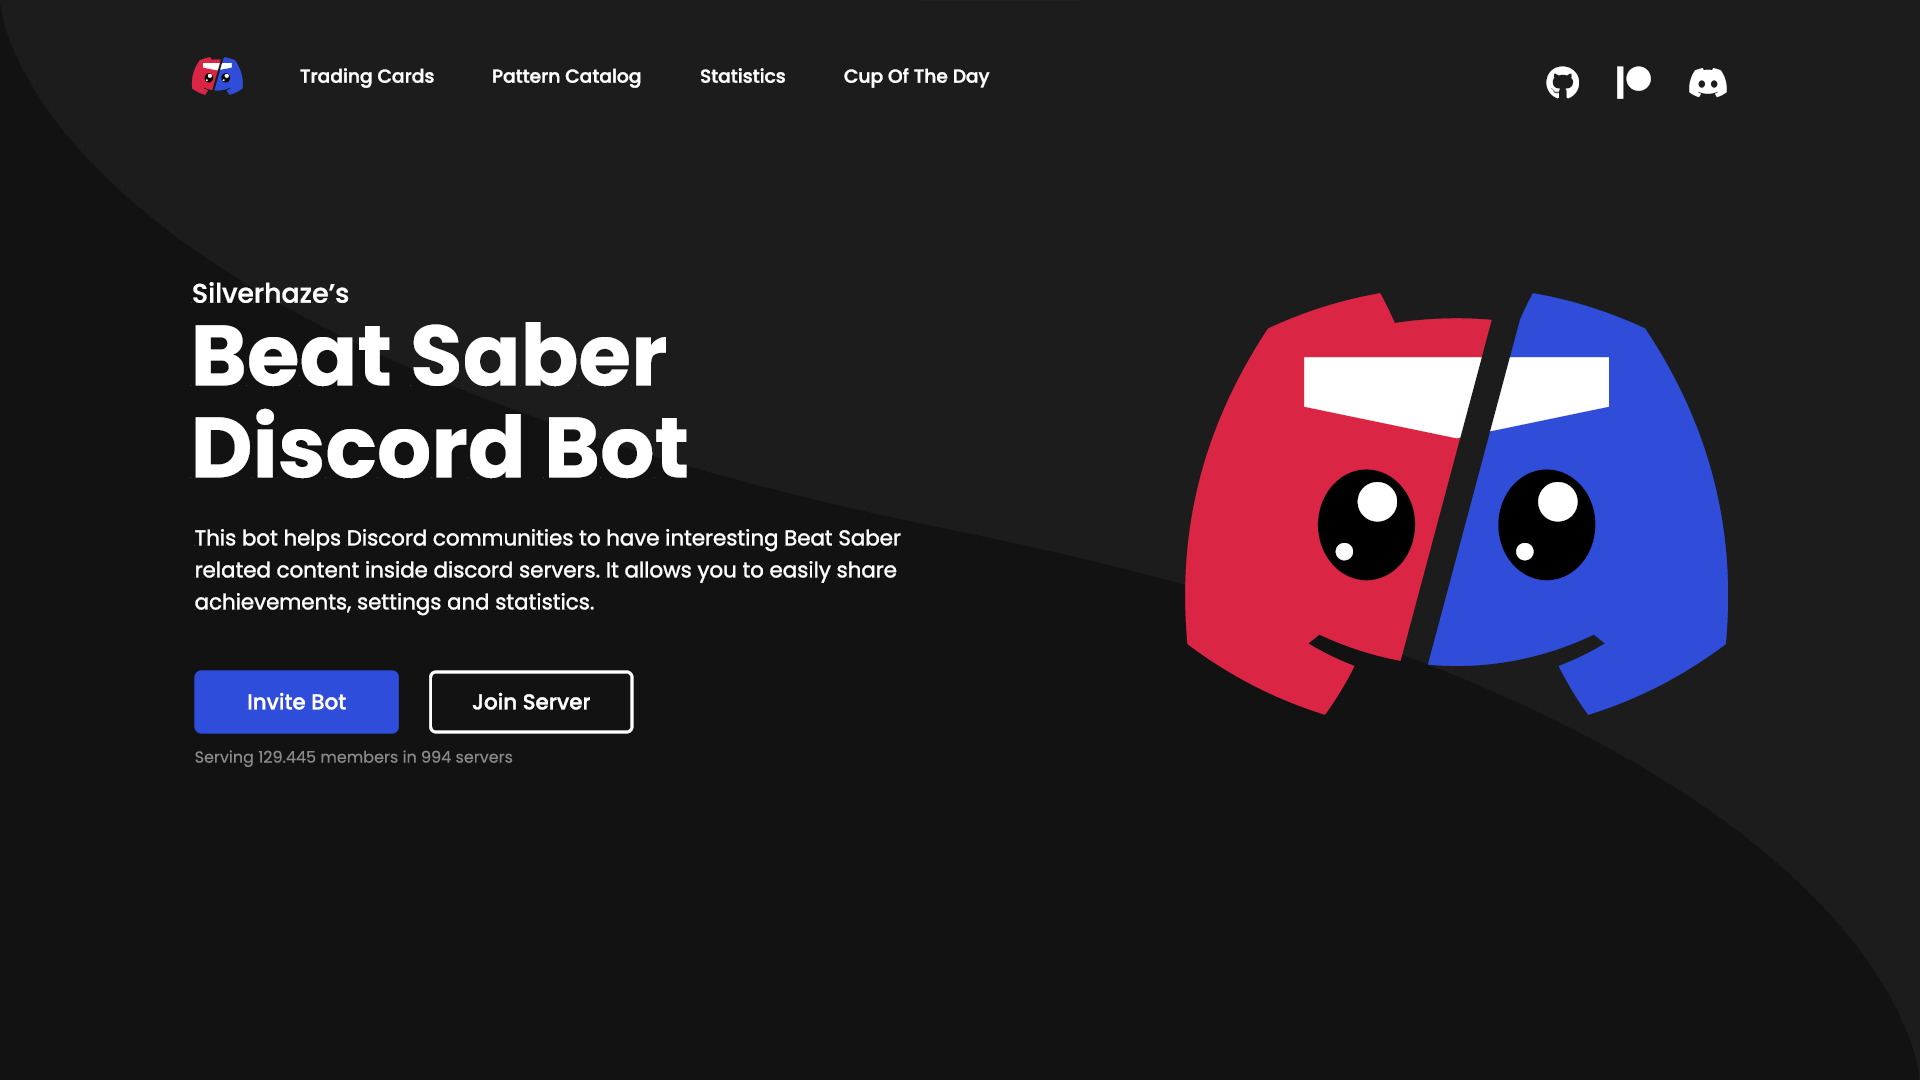 Beat Saber Discord Bot